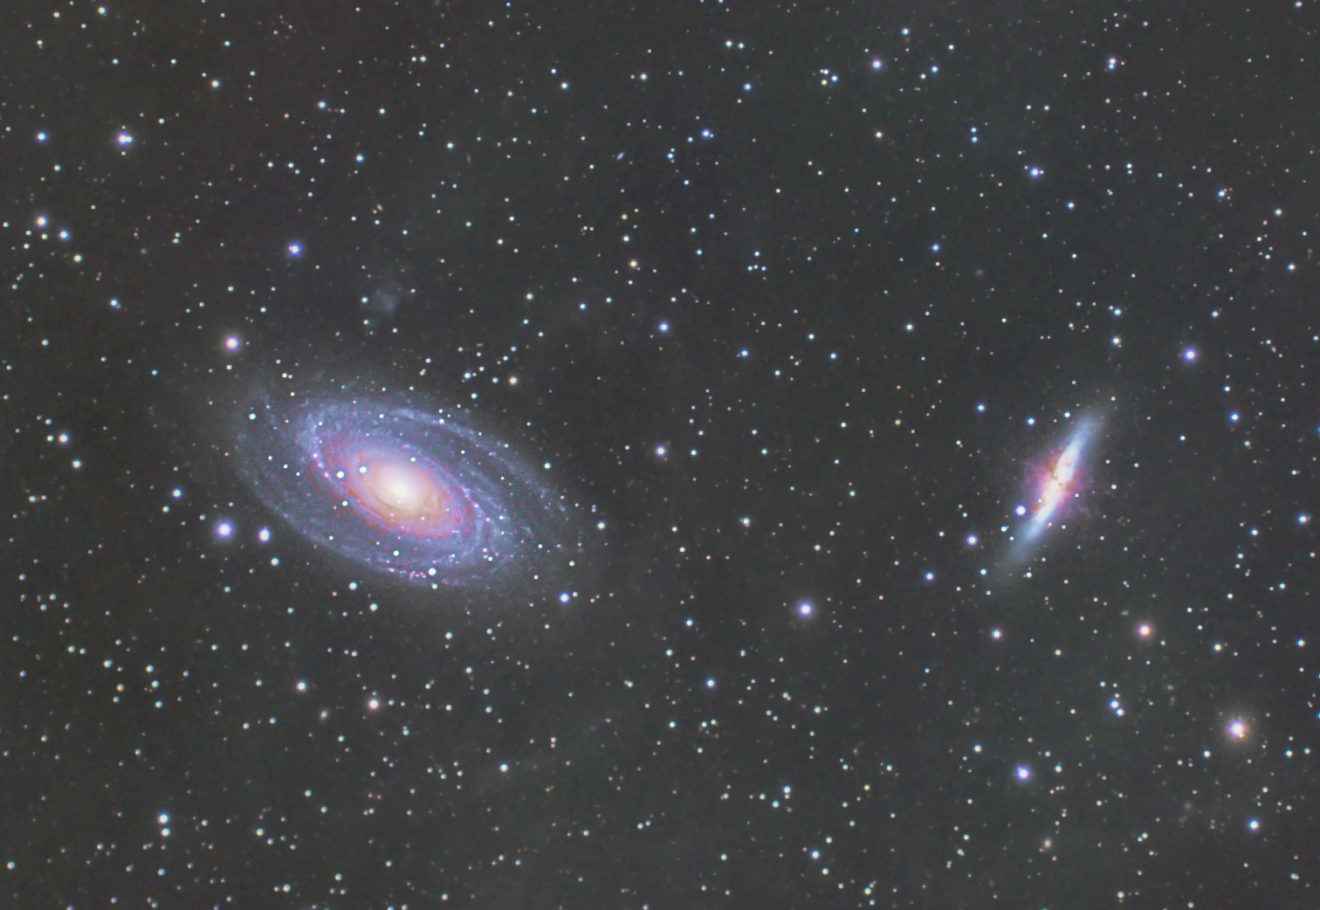 Bodestelsel Messier 81 en 82 in sterrenbeeld Grote Beer